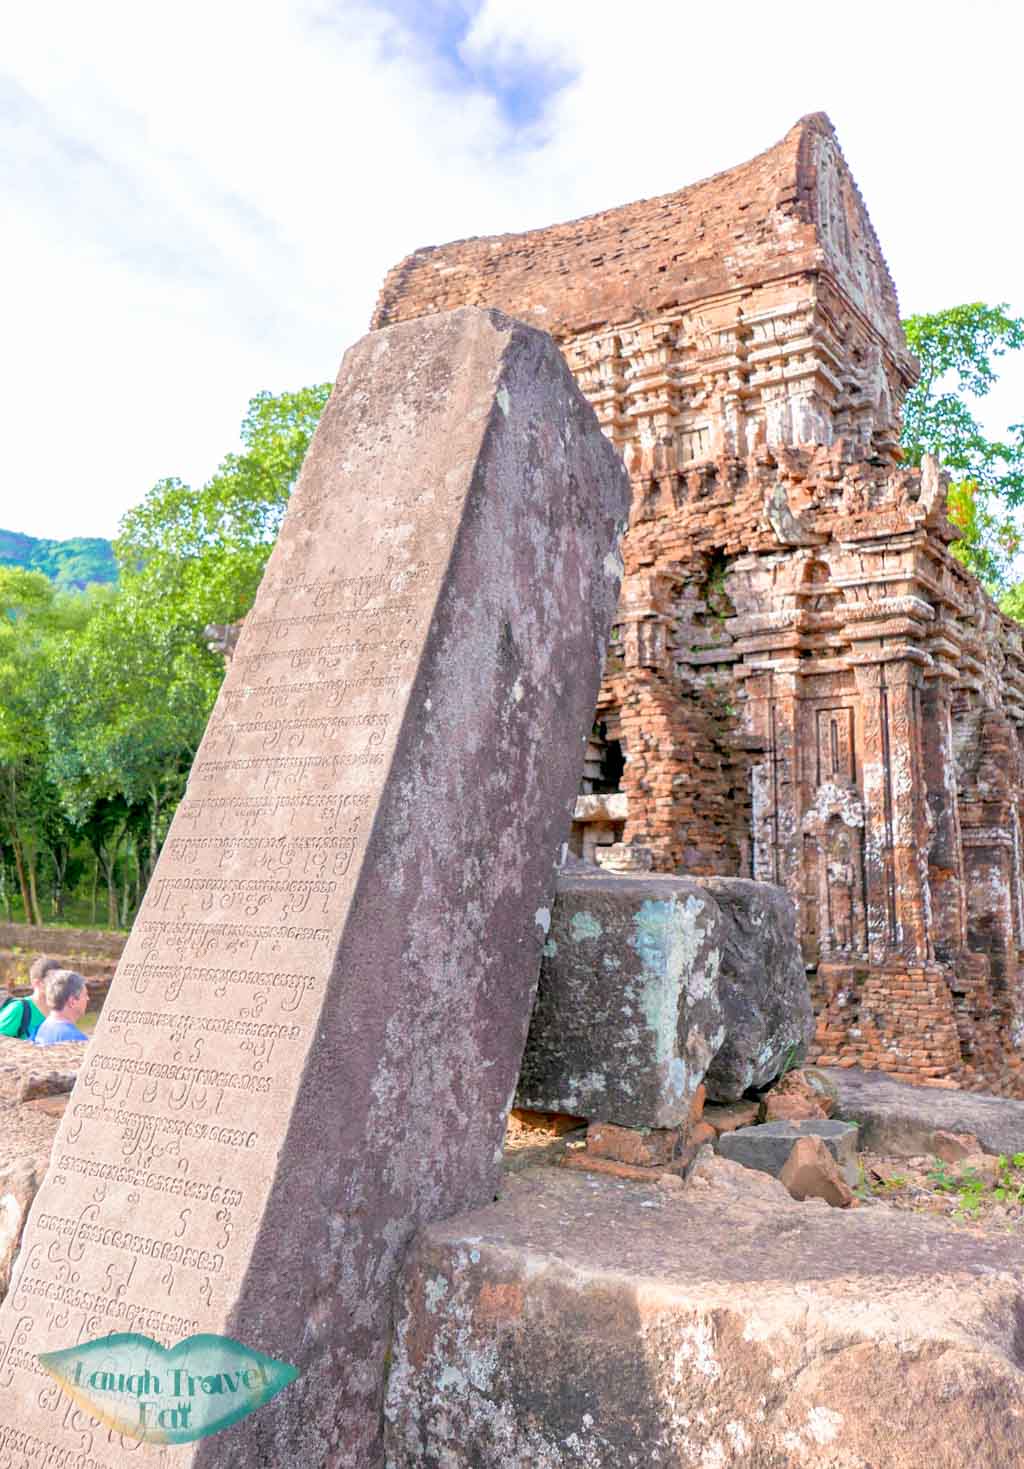 Fallen inscripted pillar in My Son, Hoi An, Vietnam - Laugh Travel Eat